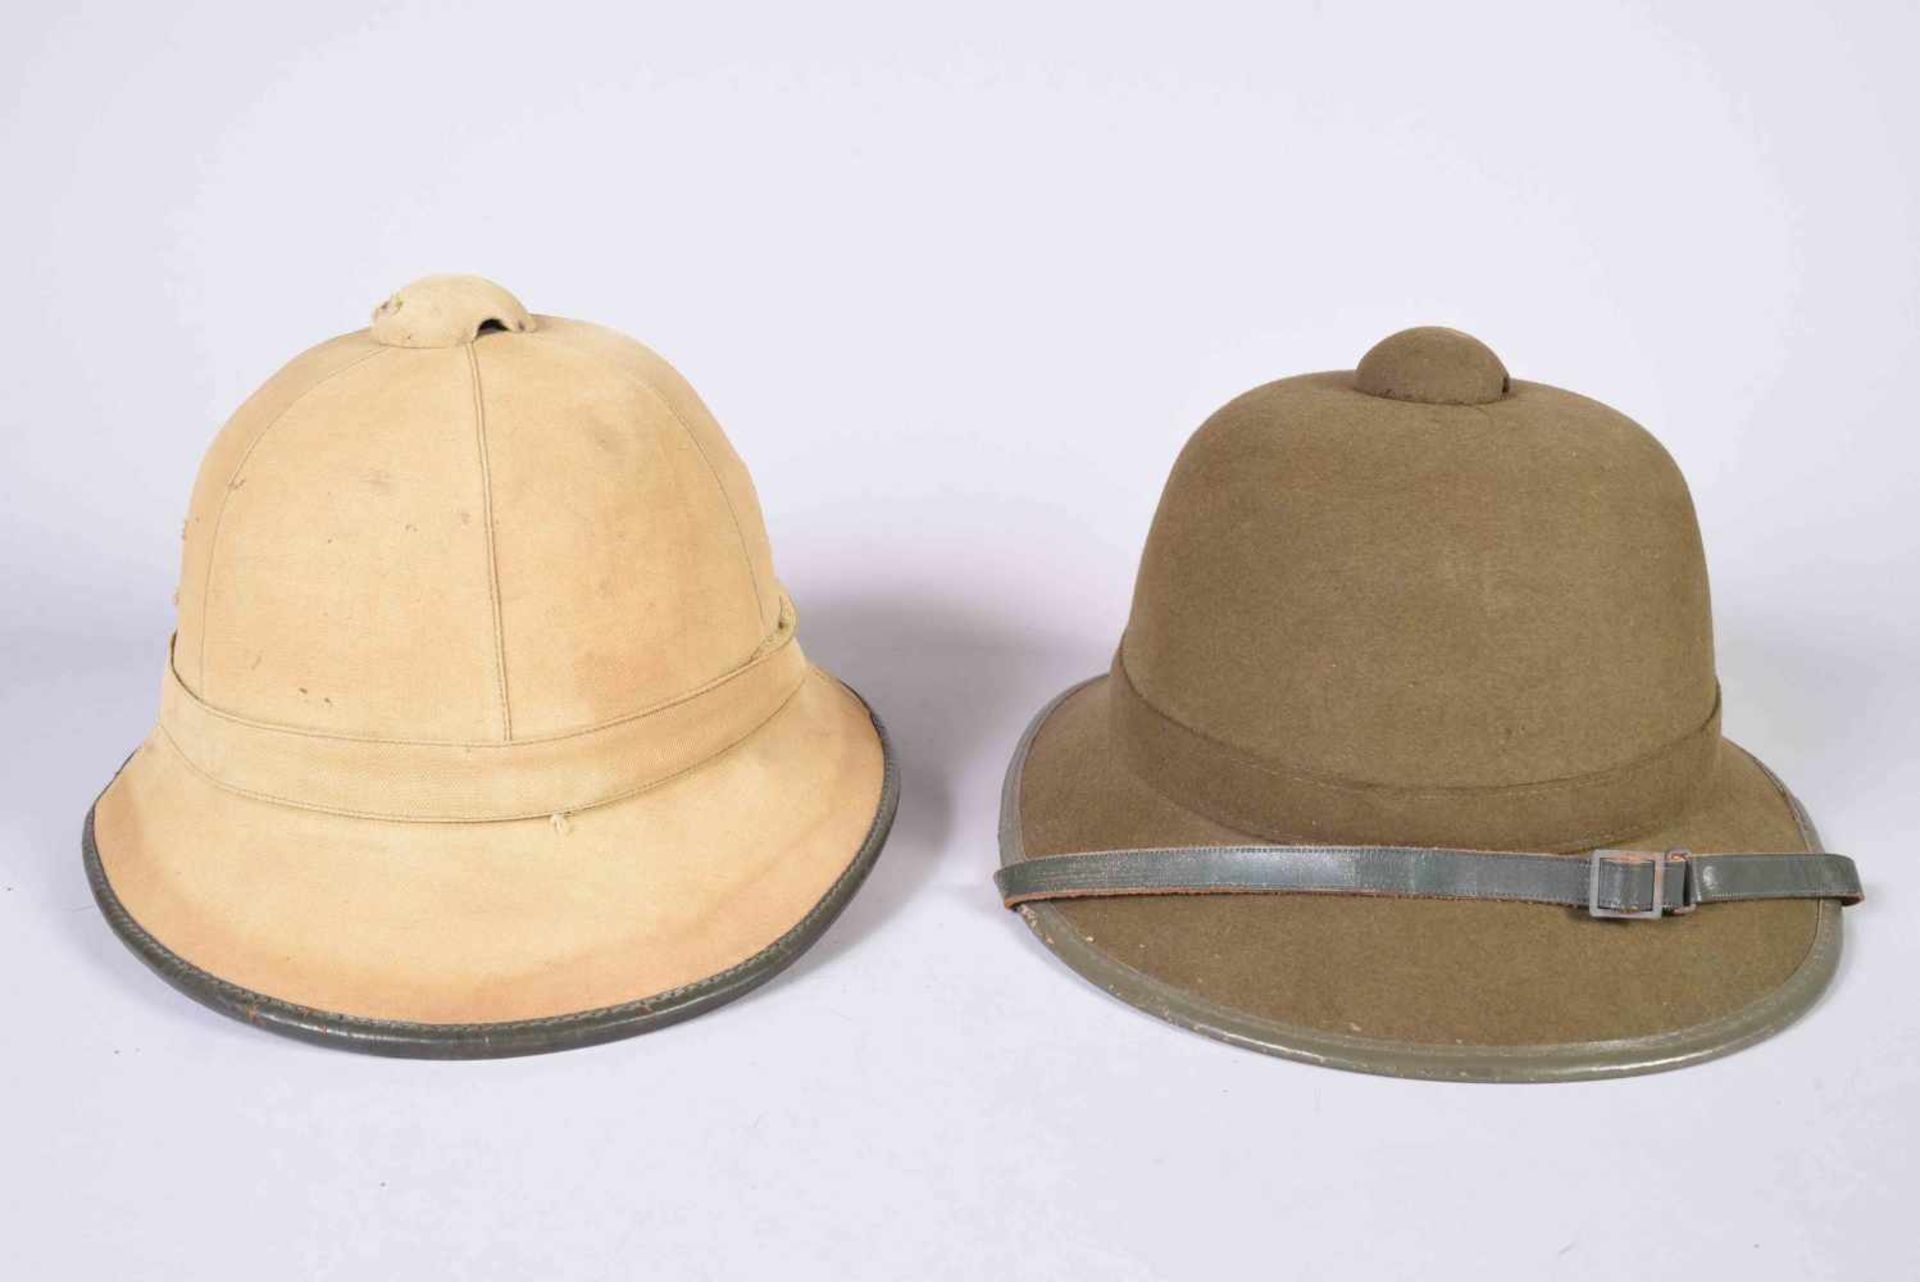 2 casques coloniaux de l’Afrika Korps. L’un en liège recouvert de toile beige avec galon de cuir